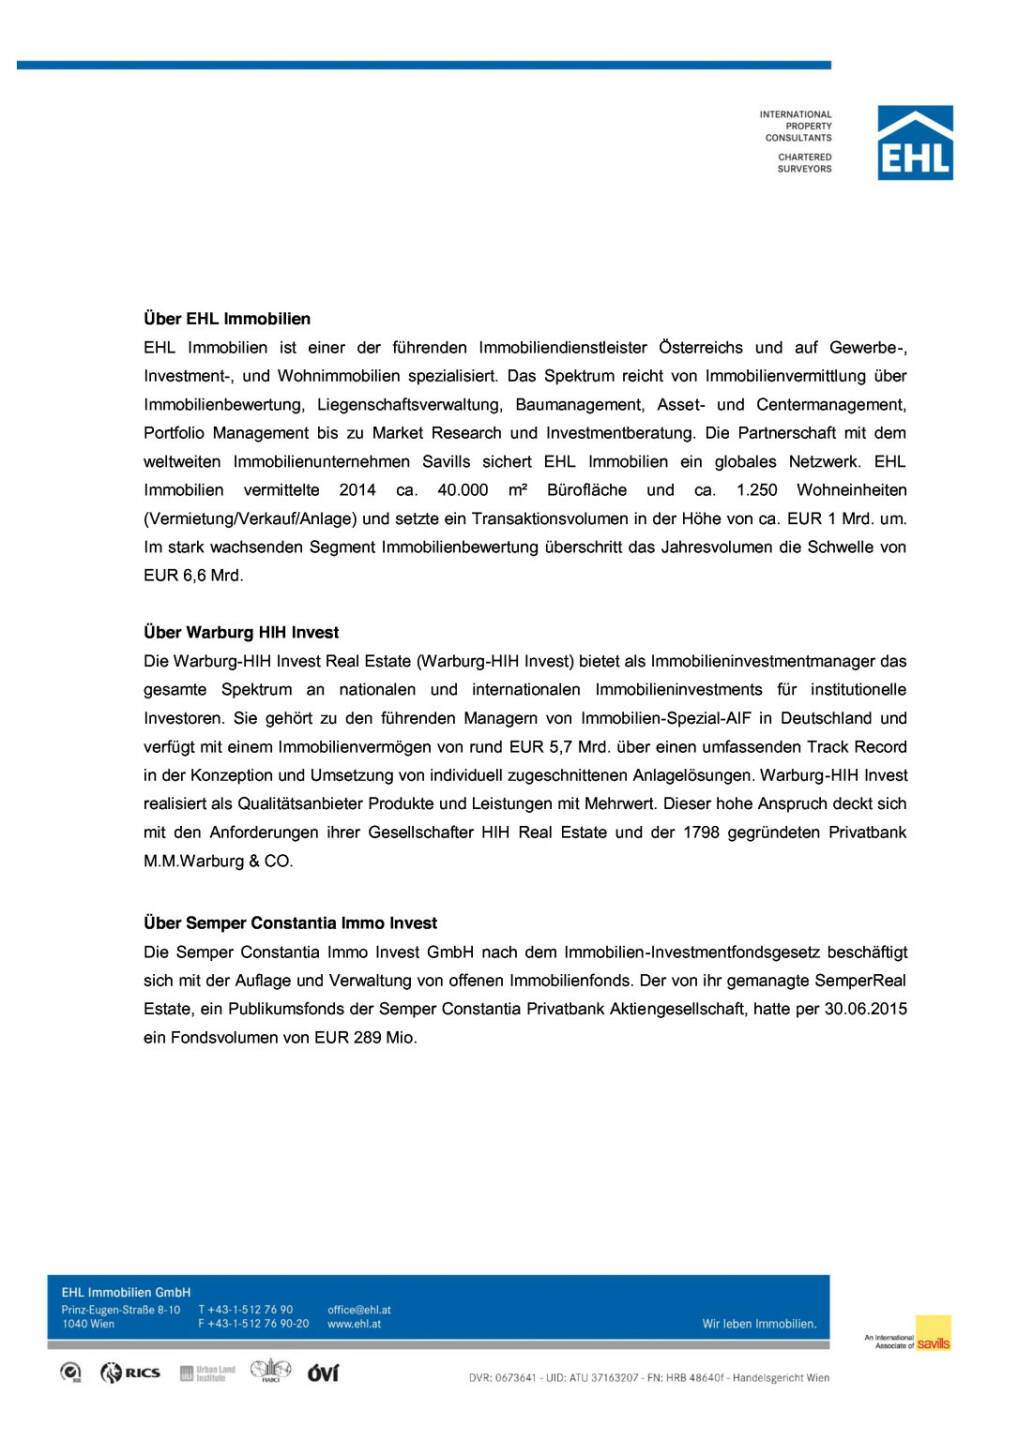 Warburg-HIH Invest verkauft FMZ Alt Erlaa, Seite 2/3, komplettes Dokument unter http://boerse-social.com/static/uploads/file_300_warburg-hih_invest_verkauft_fmz_alt_erlaa.pdf